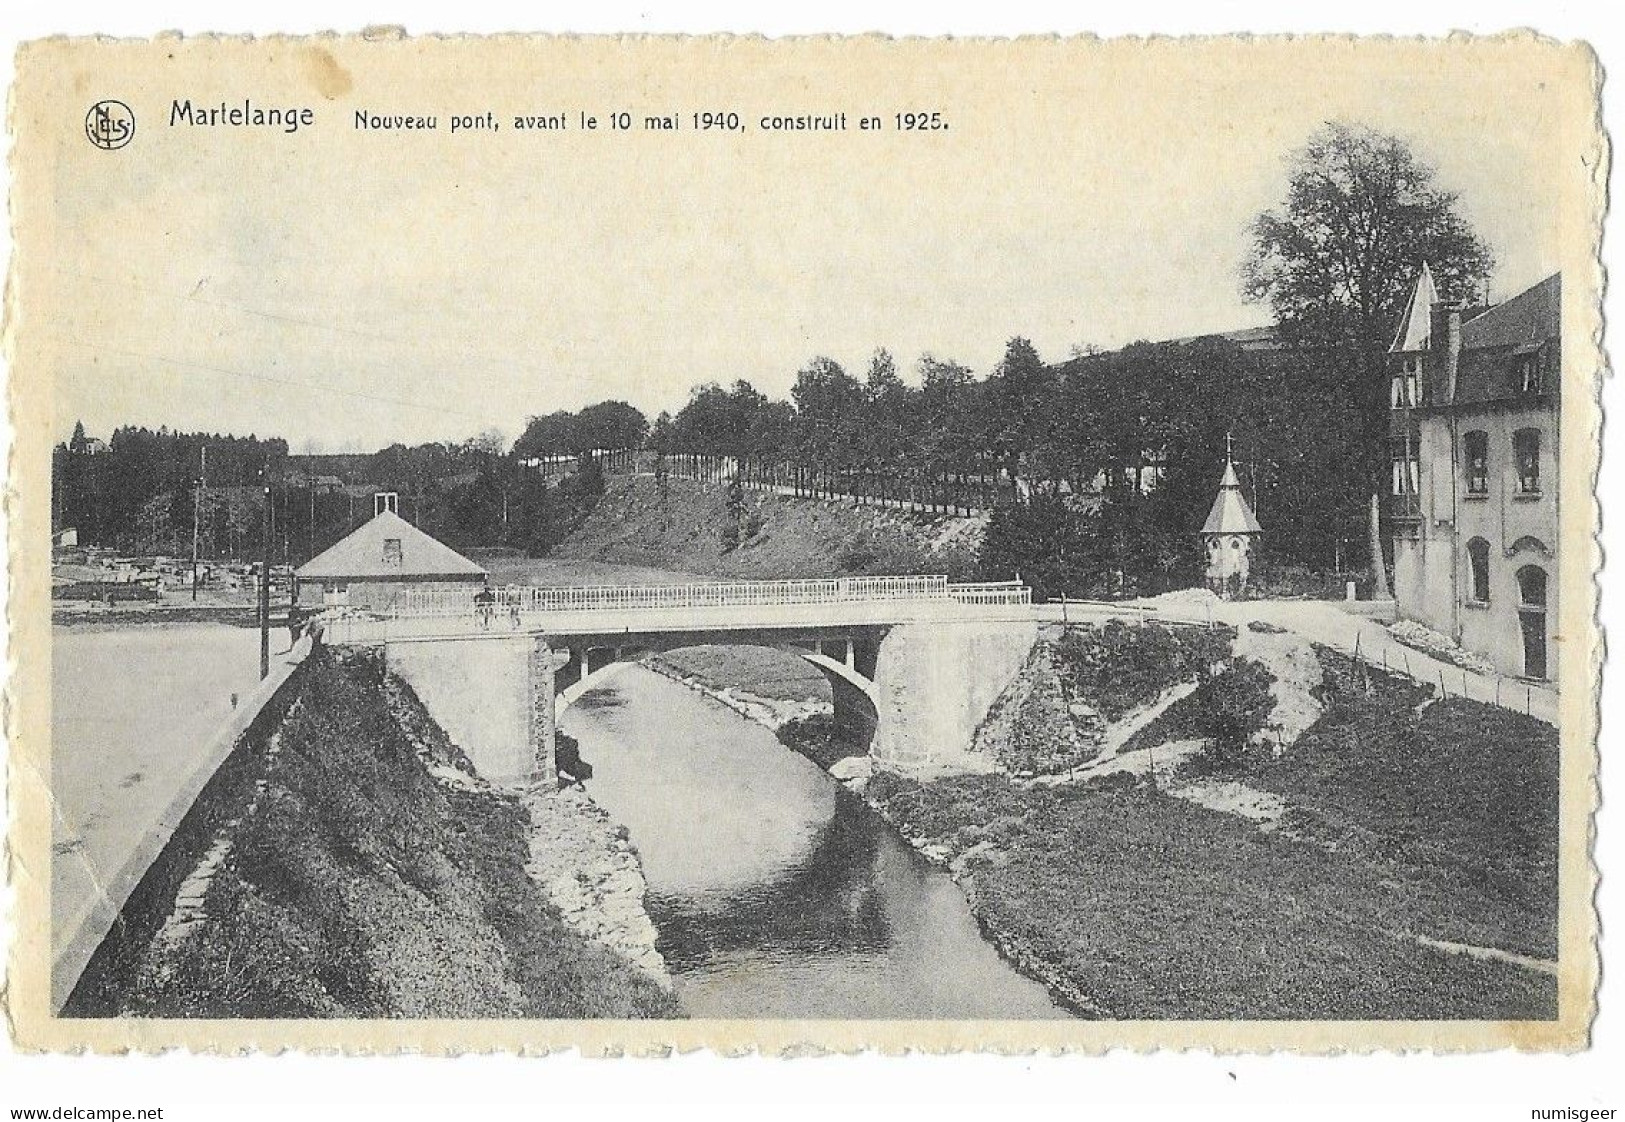 MARTELANGE - Nouveau Pont,avant Le 10 Mai 1940, Construit En 1925 - Martelange